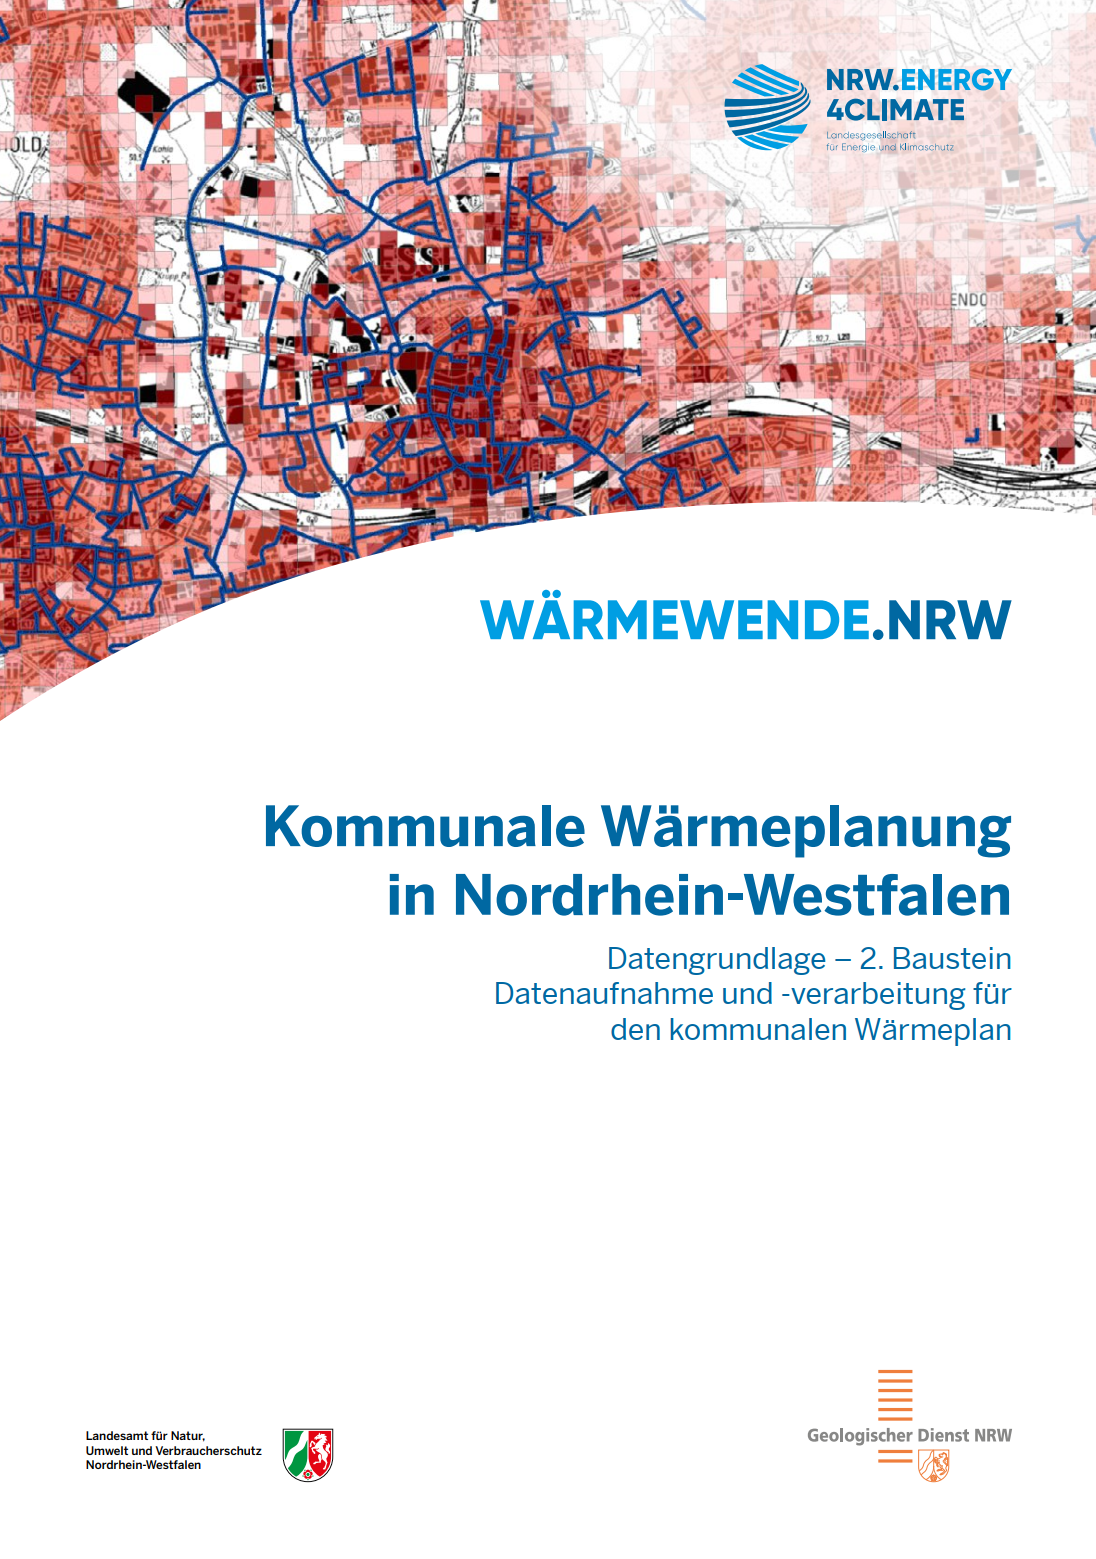 Kommunale Wärmeplanung in Nordrhein-Westfalen - Datengrundlage